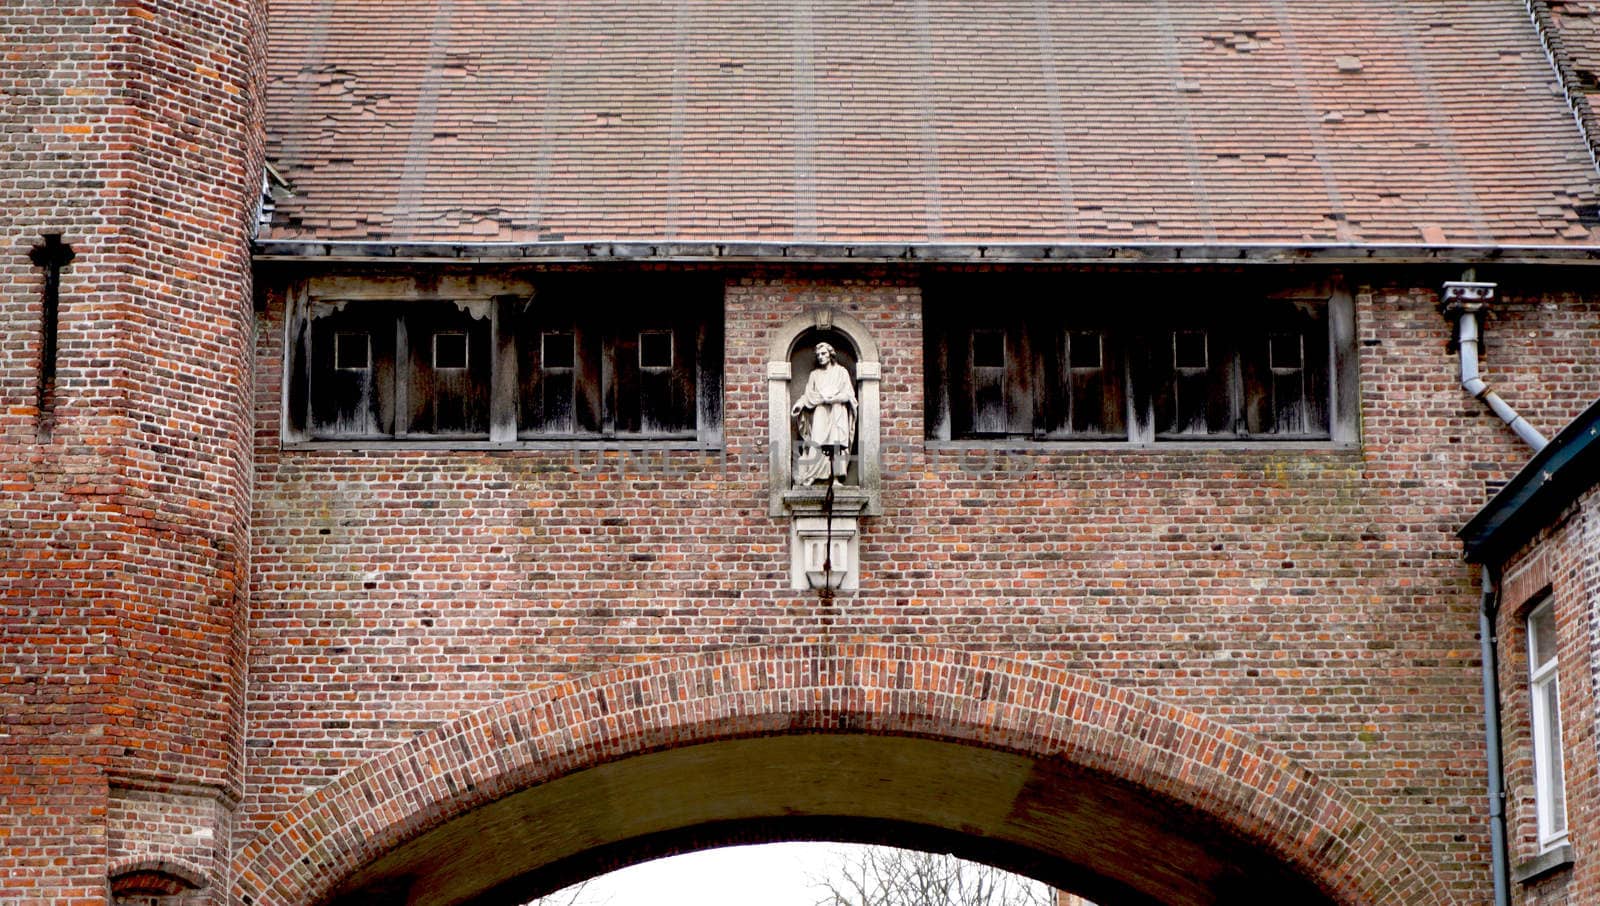 Historical architecture details in Brugge Belgium